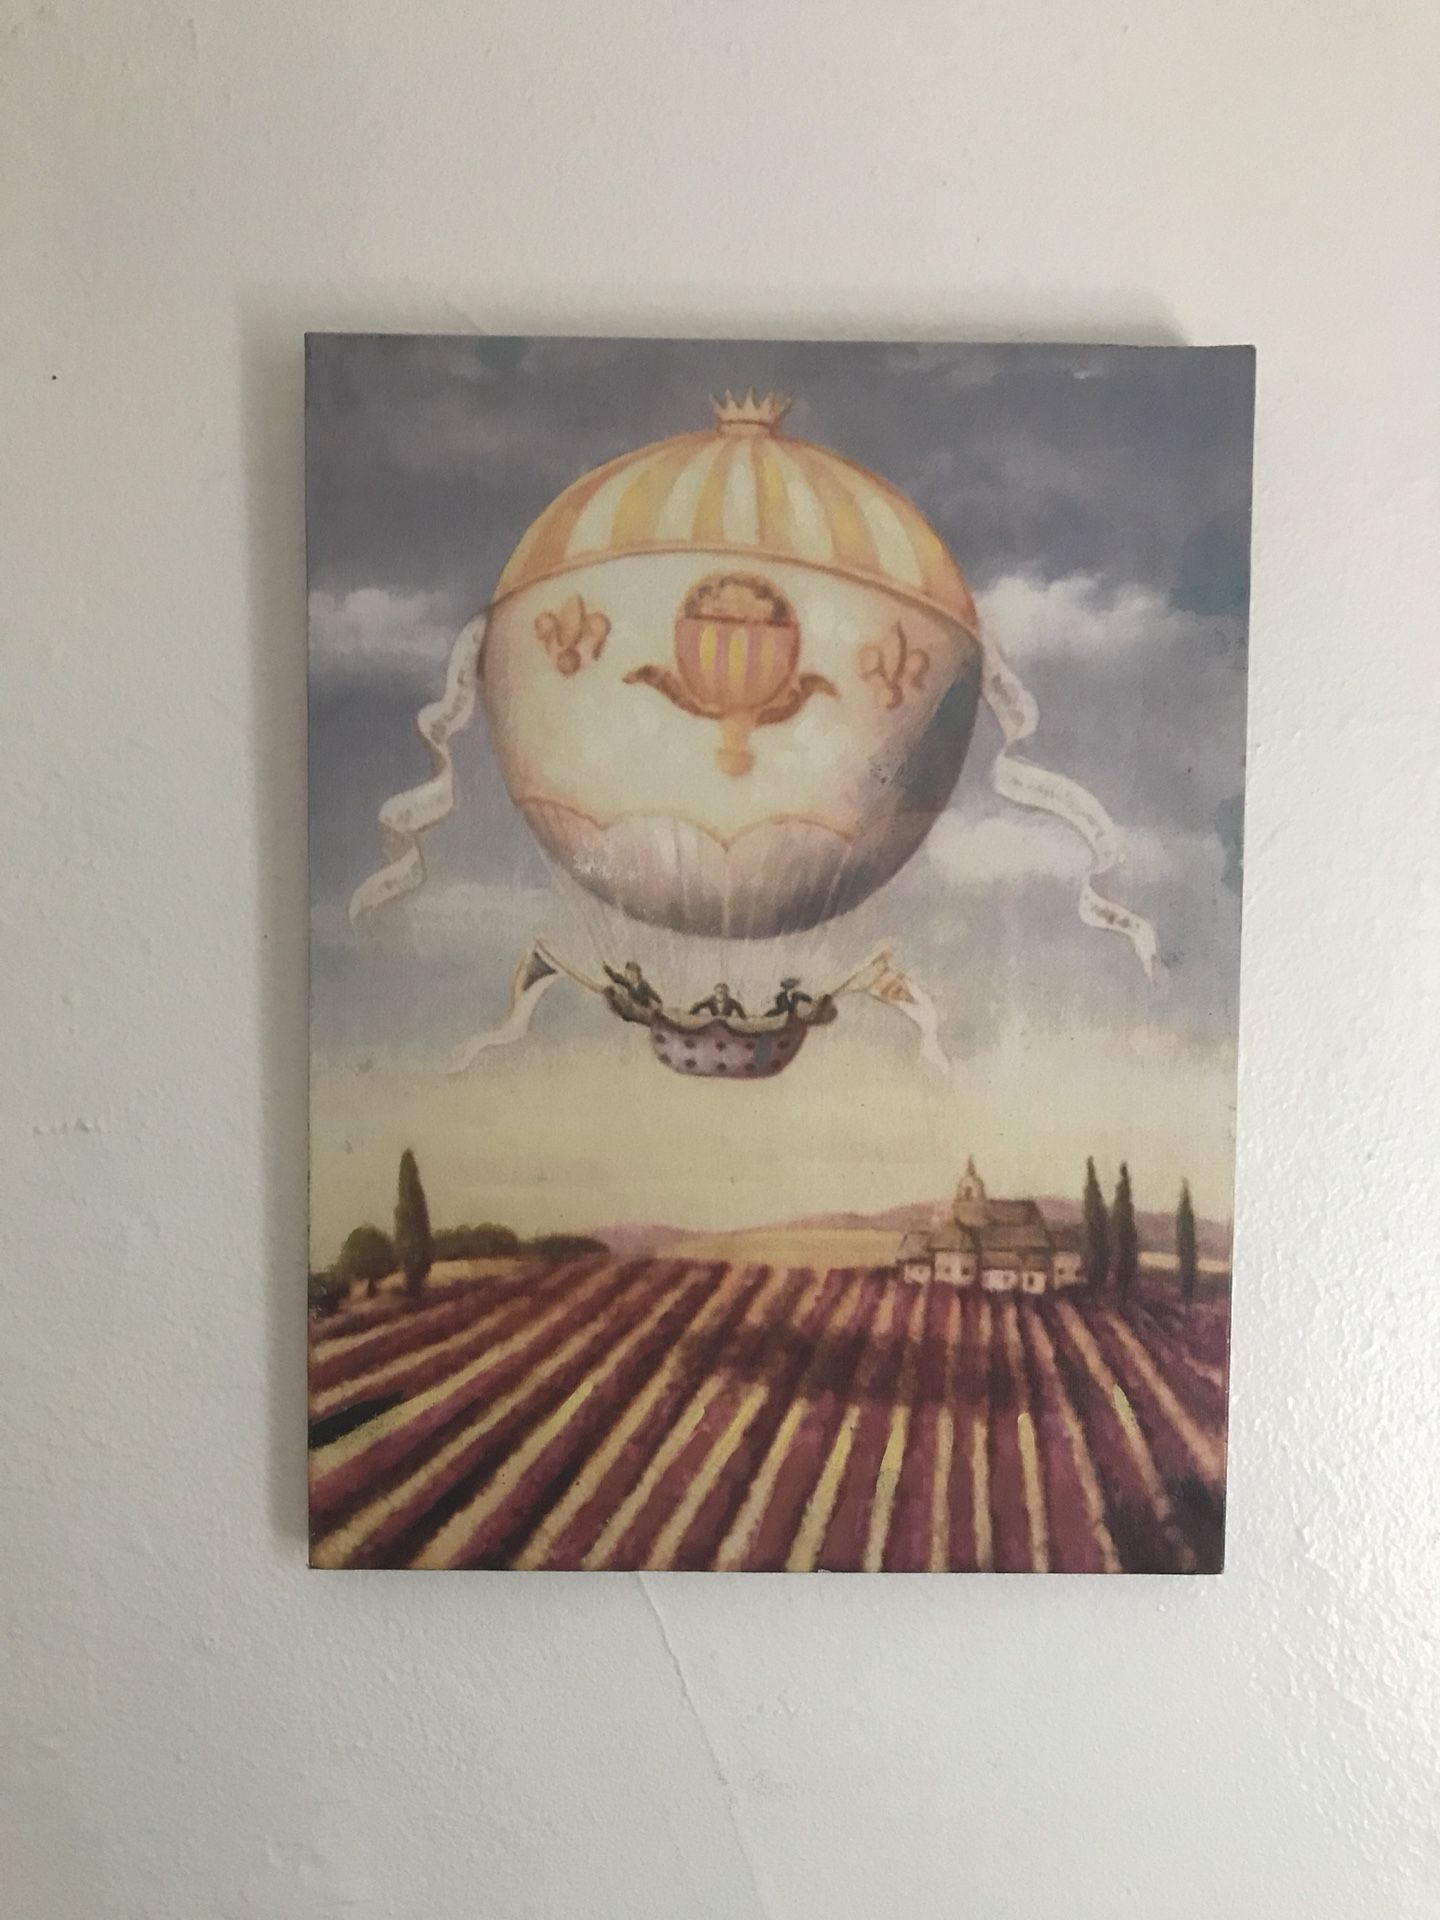 Hot air balloon print on canvas